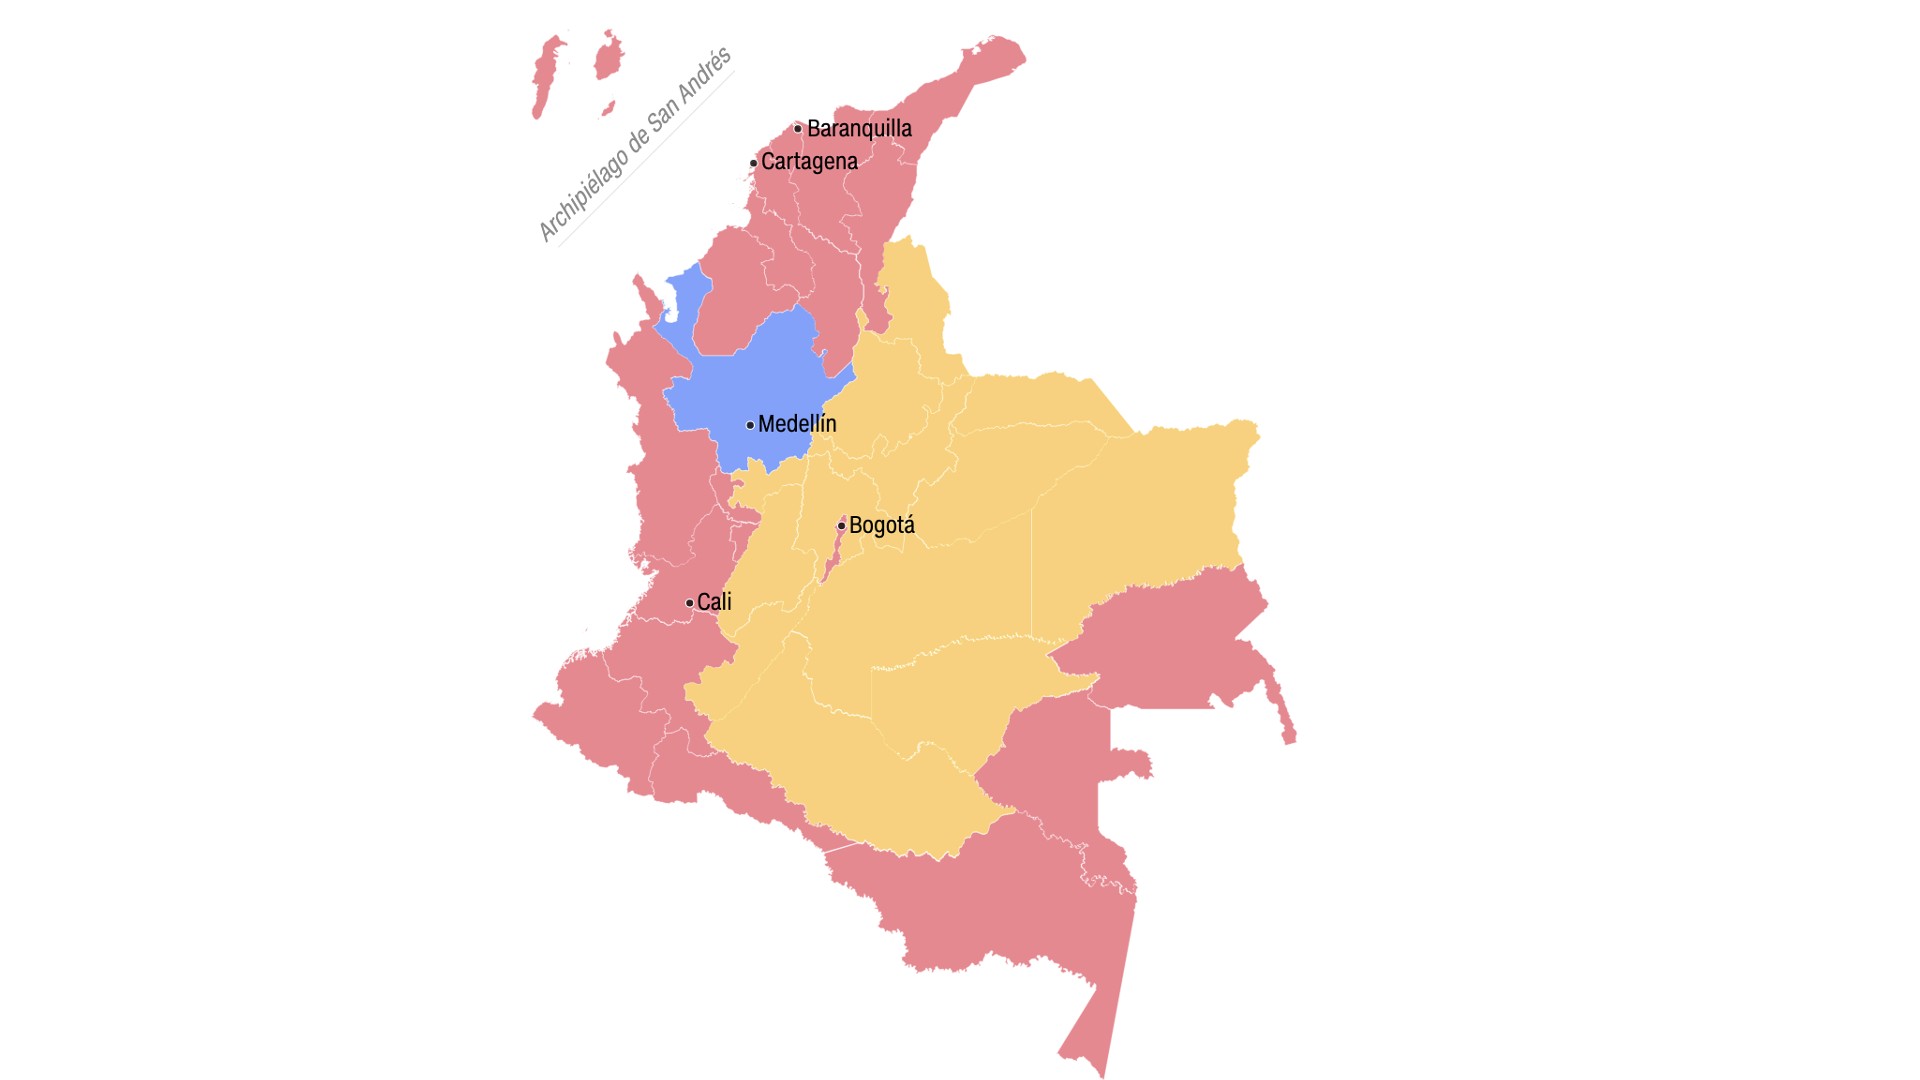 mapa colombia 29 mayo